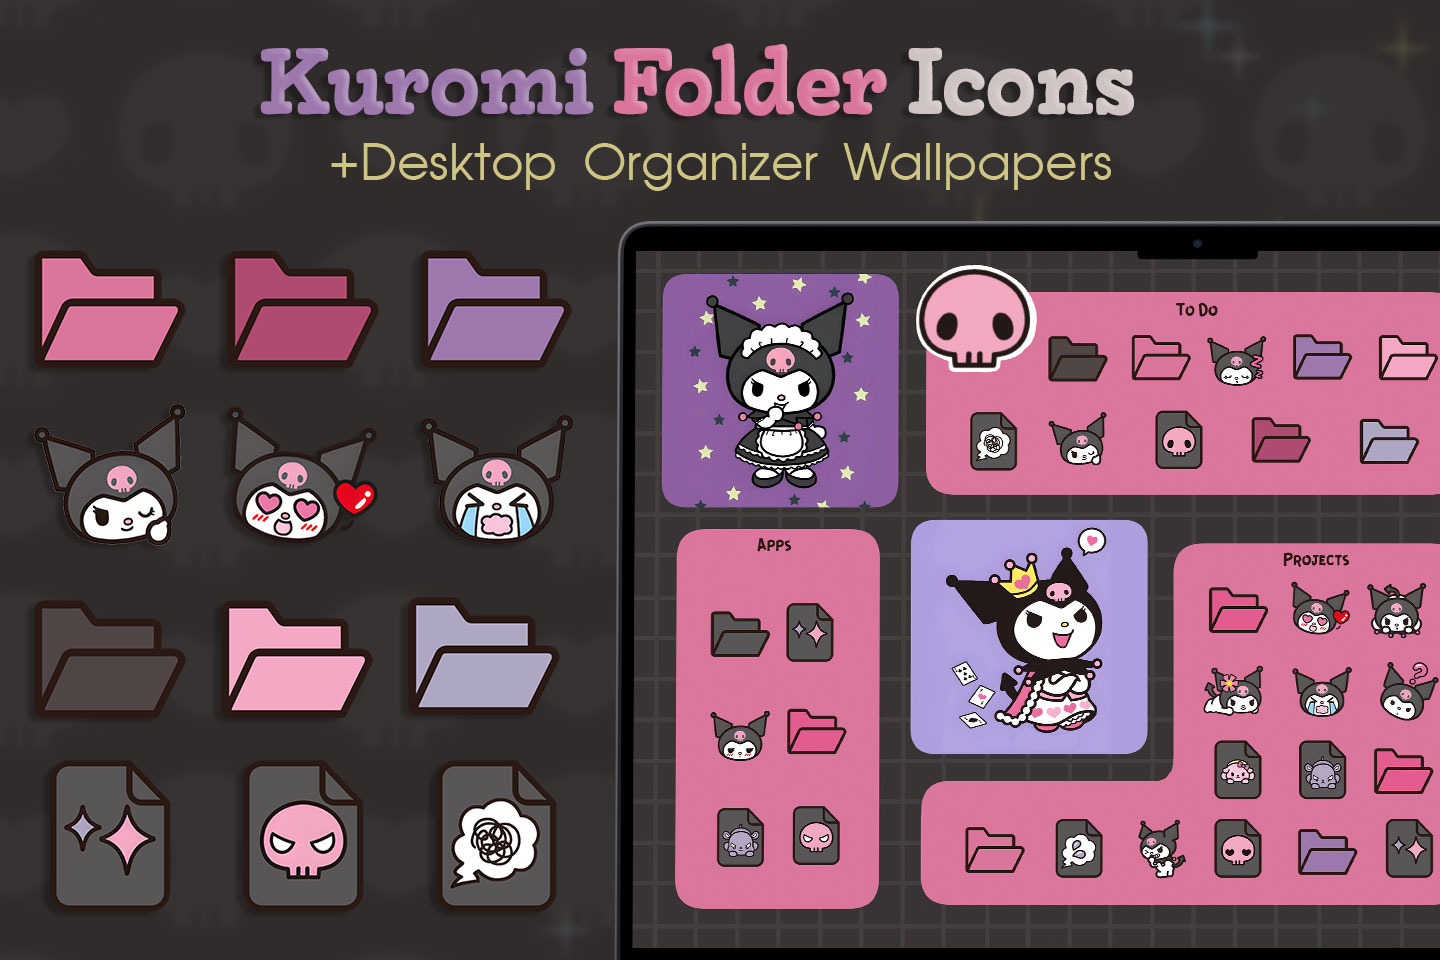 Pack d’icônes du dossier Kuromi